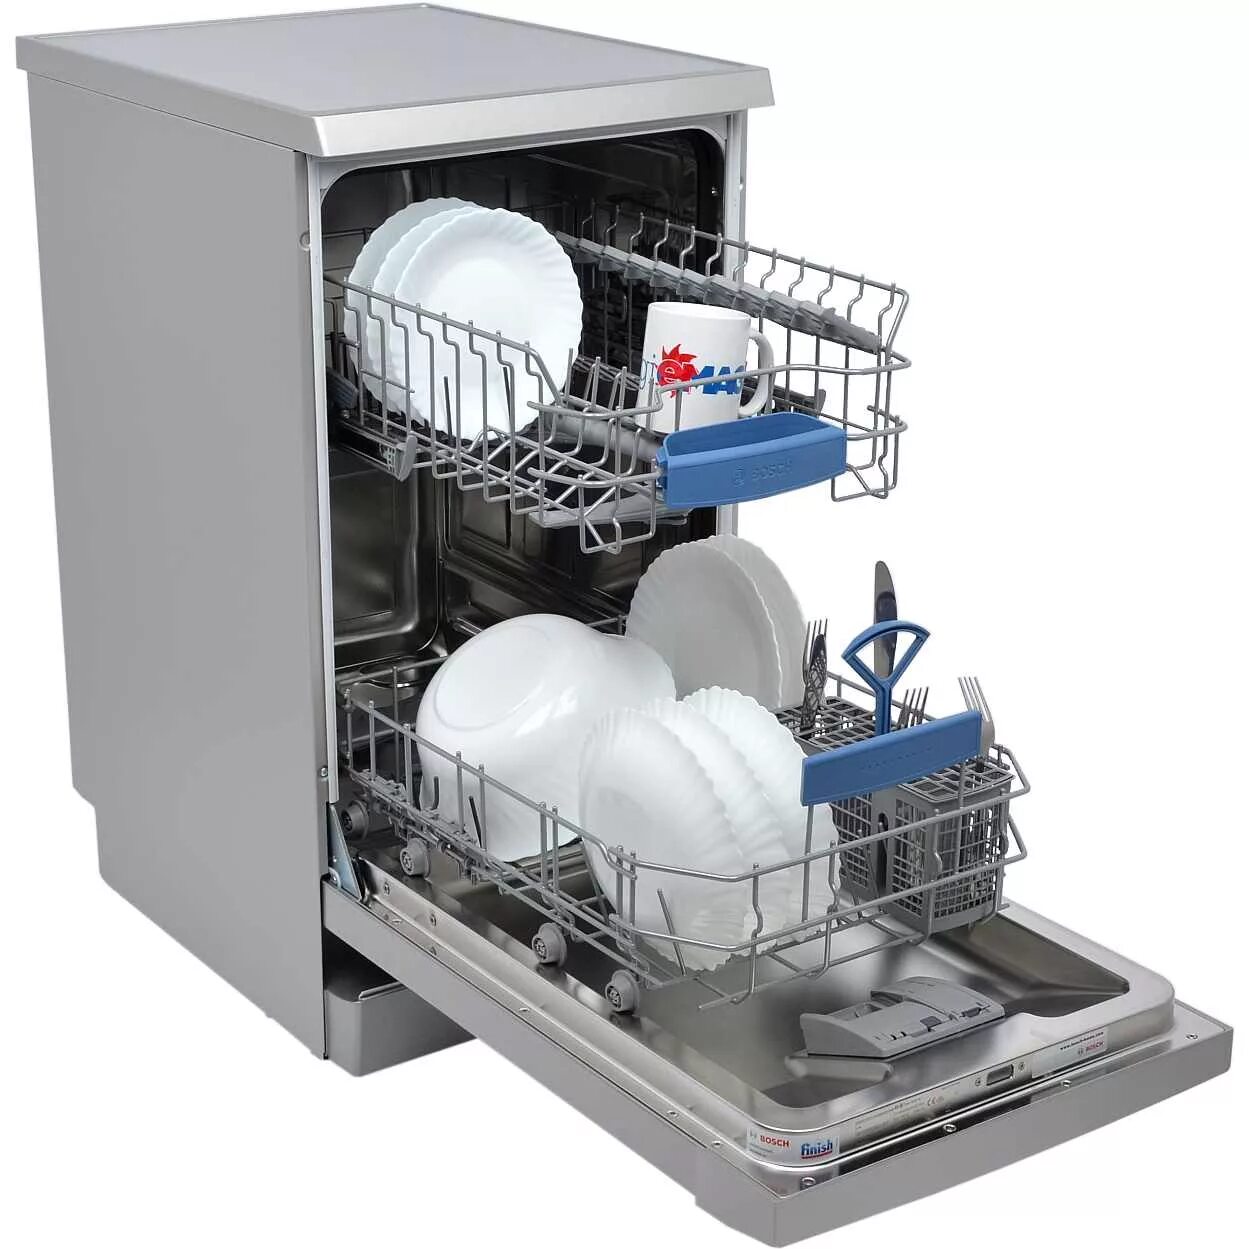 1 купить посудомоечную машину. Посудомоечная машина Bosch sps2ikw1br. Посудомоечная машина Neff s855hmx50r. ПММ бош sps53. Посудомоечная машина Bosch spv6hmx1mr.